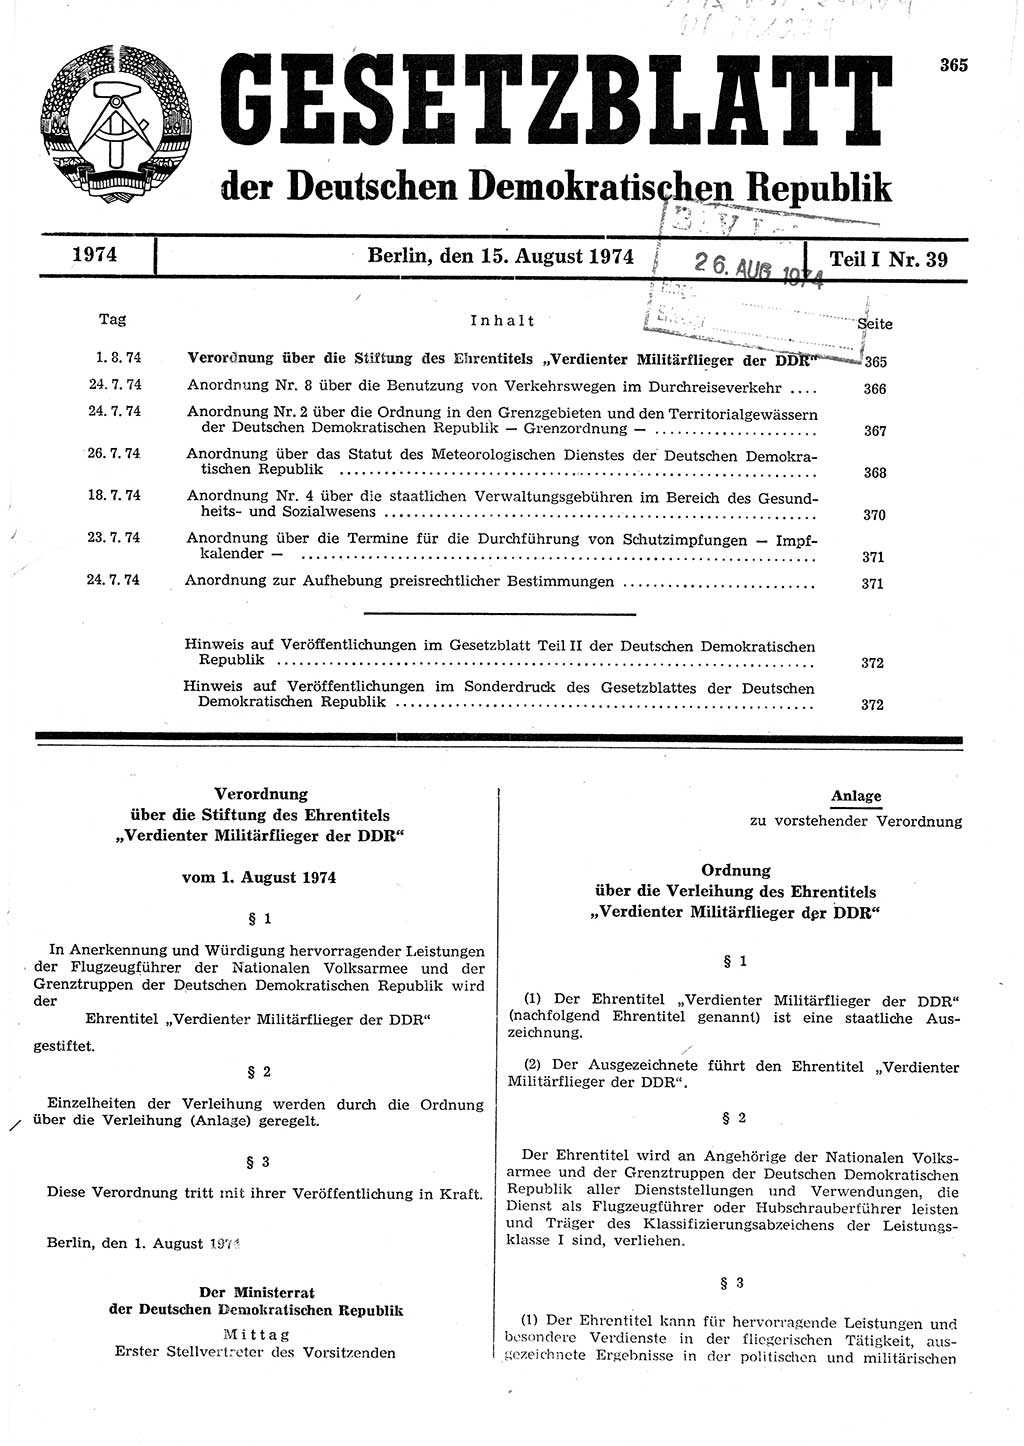 Gesetzblatt (GBl.) der Deutschen Demokratischen Republik (DDR) Teil Ⅰ 1974, Seite 365 (GBl. DDR Ⅰ 1974, S. 365)